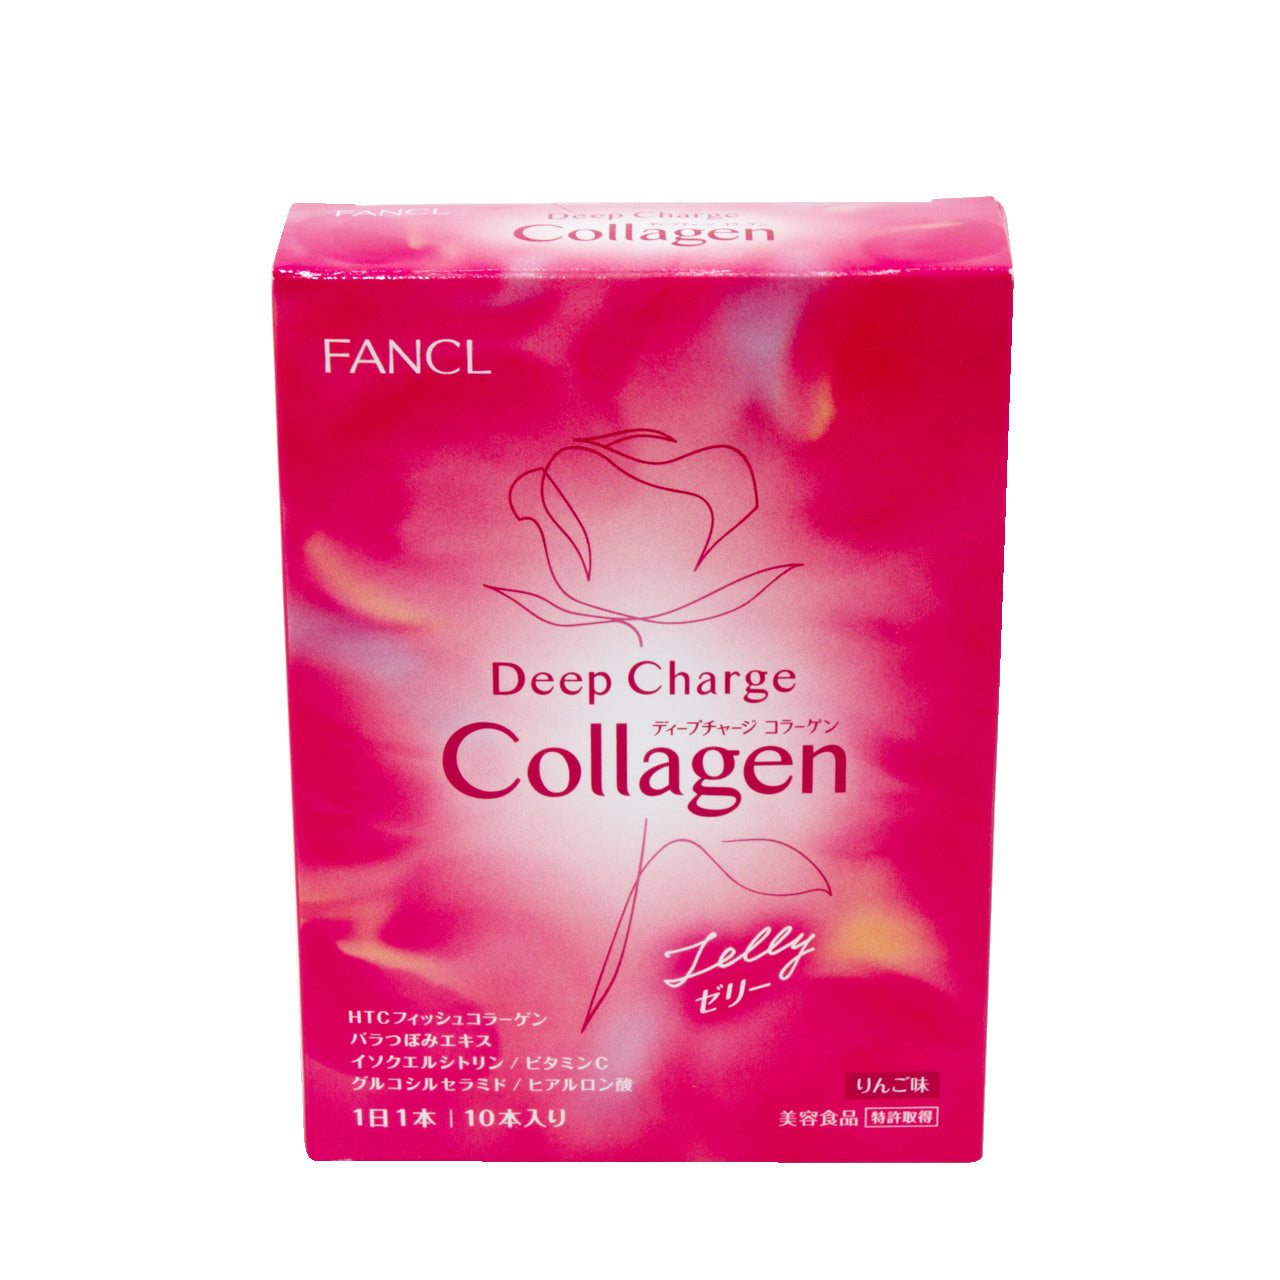 Fancl Deep Charge Collagen Jelly 10PCS Fancl